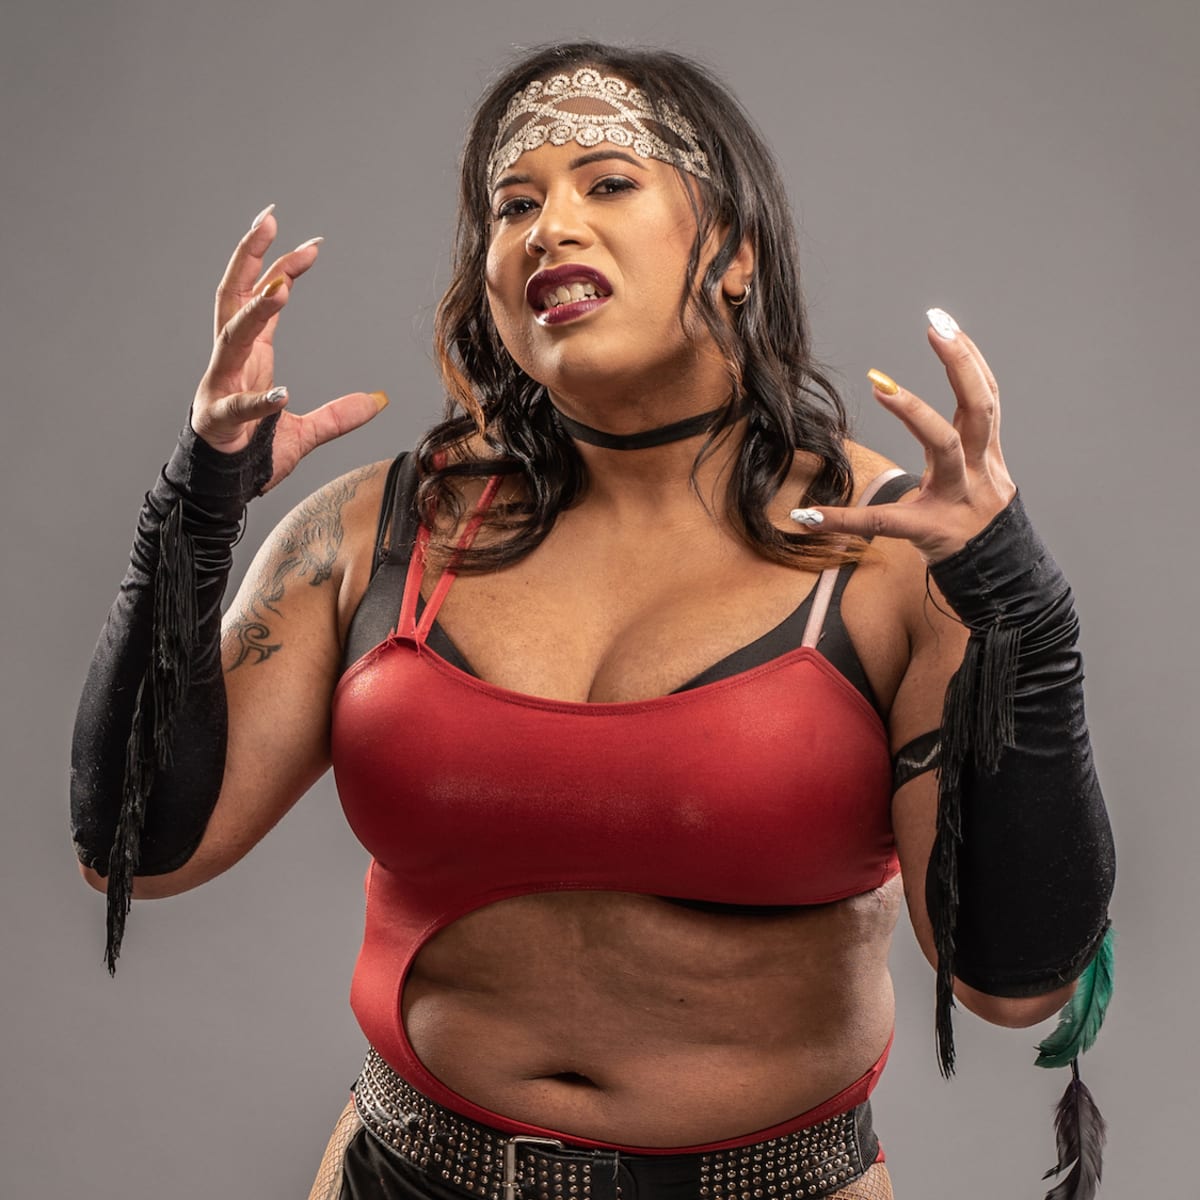 Nyla Rose AEW wrestler makes history as transgender performer image